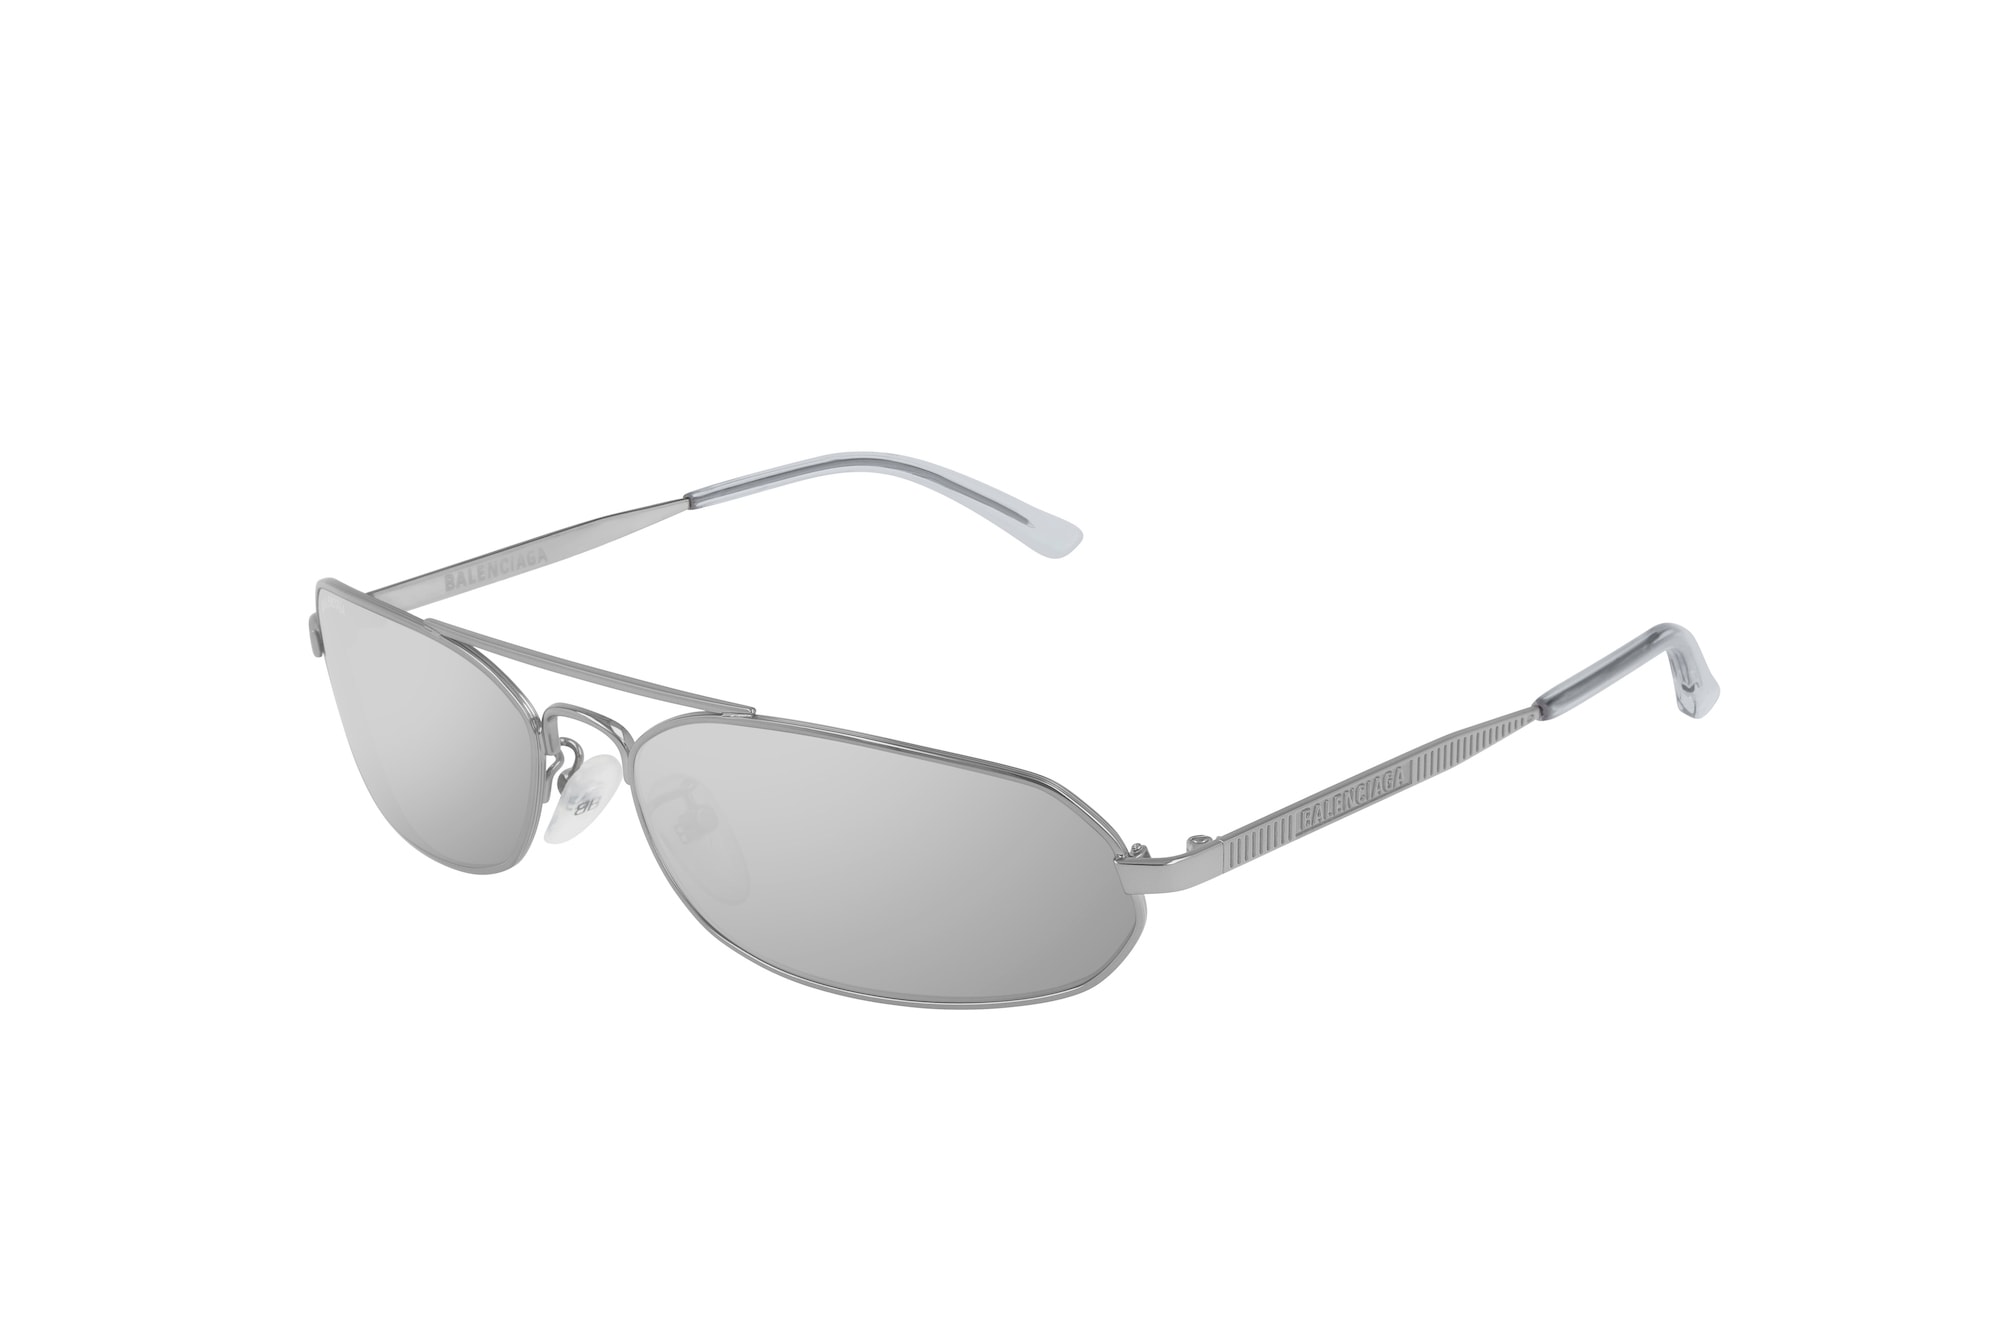 Balenciaga Summer 2019 Eyewear Collection Range Sunglasses Shades Frames Retro Futuristic Designer Logo Mirror Lenses